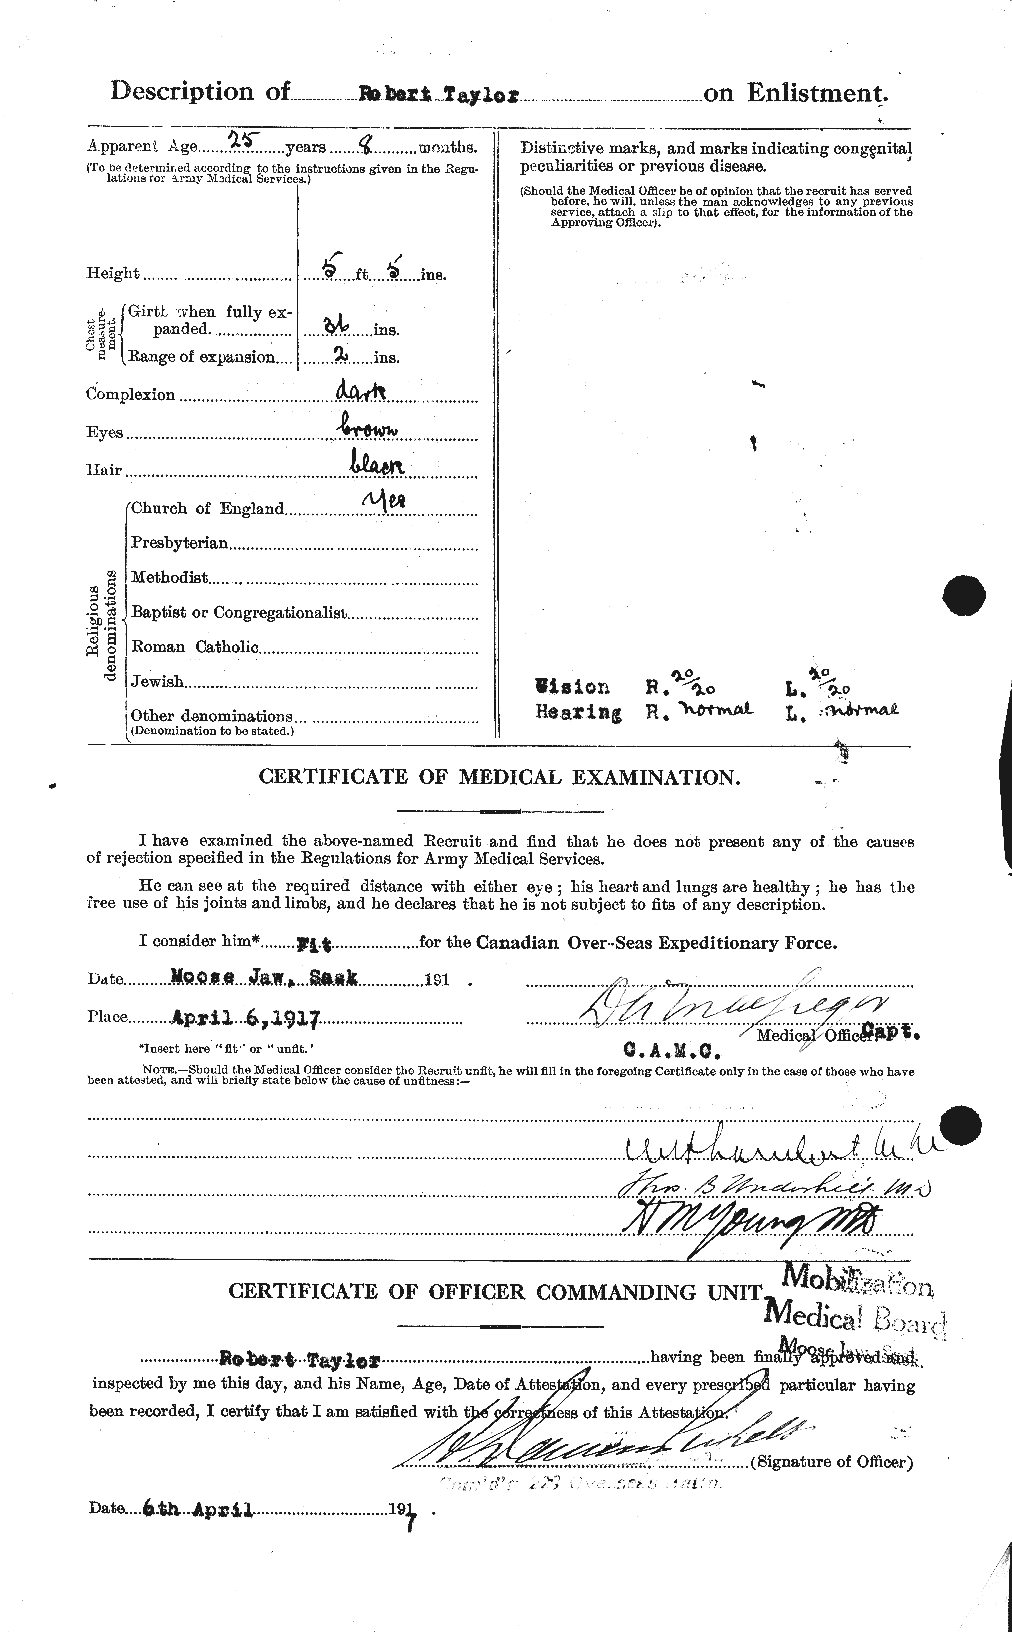 Dossiers du Personnel de la Première Guerre mondiale - CEC 627455b